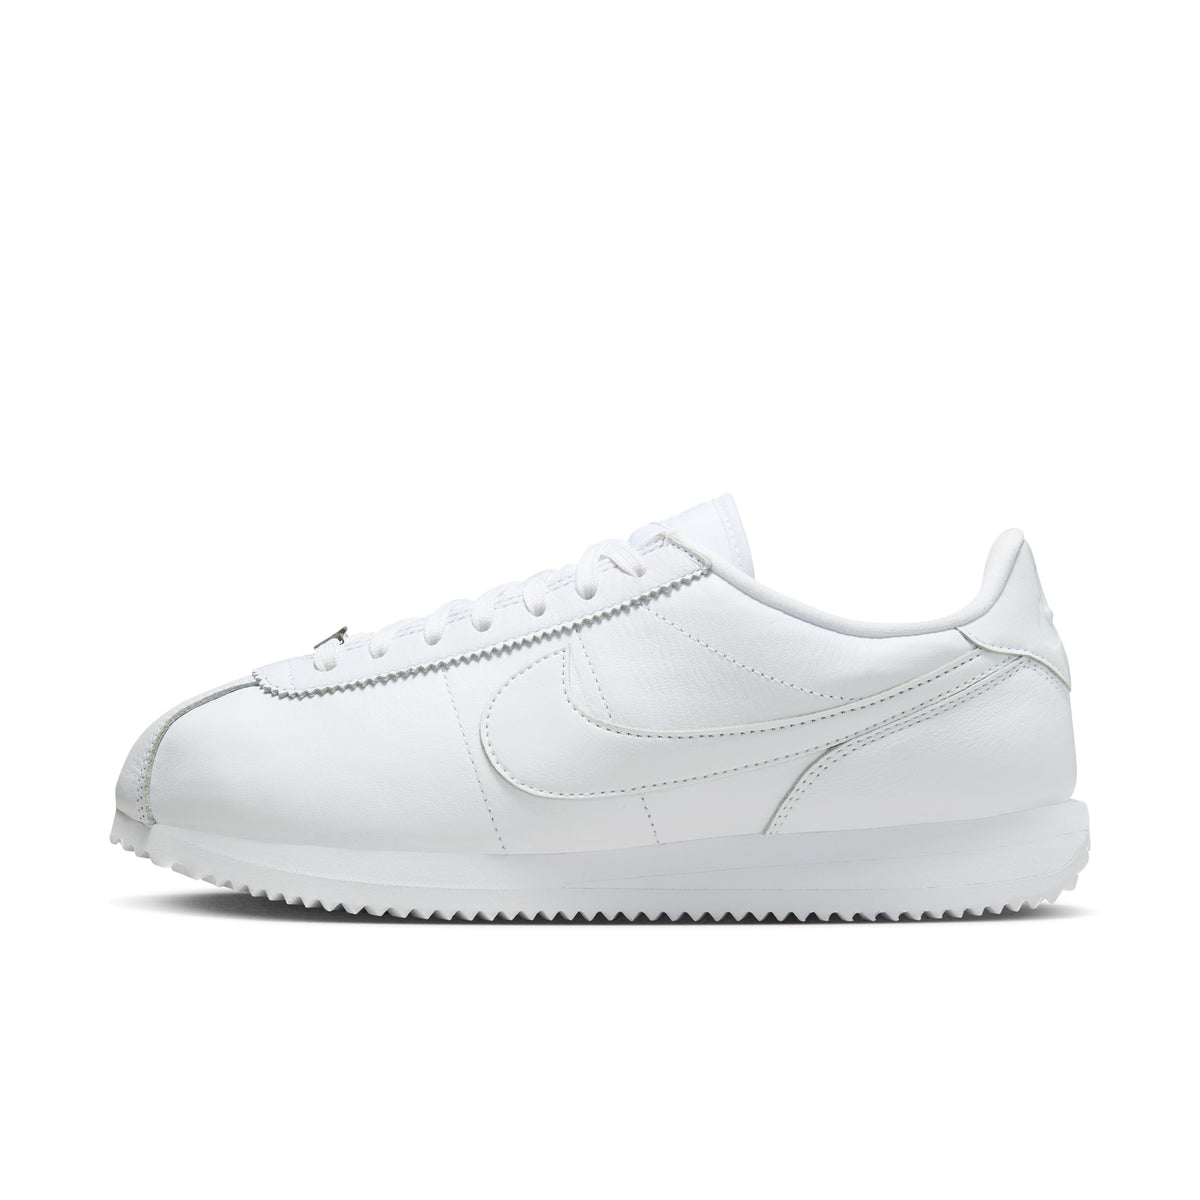 WMNS Nike Cortez 23 Leather "White"